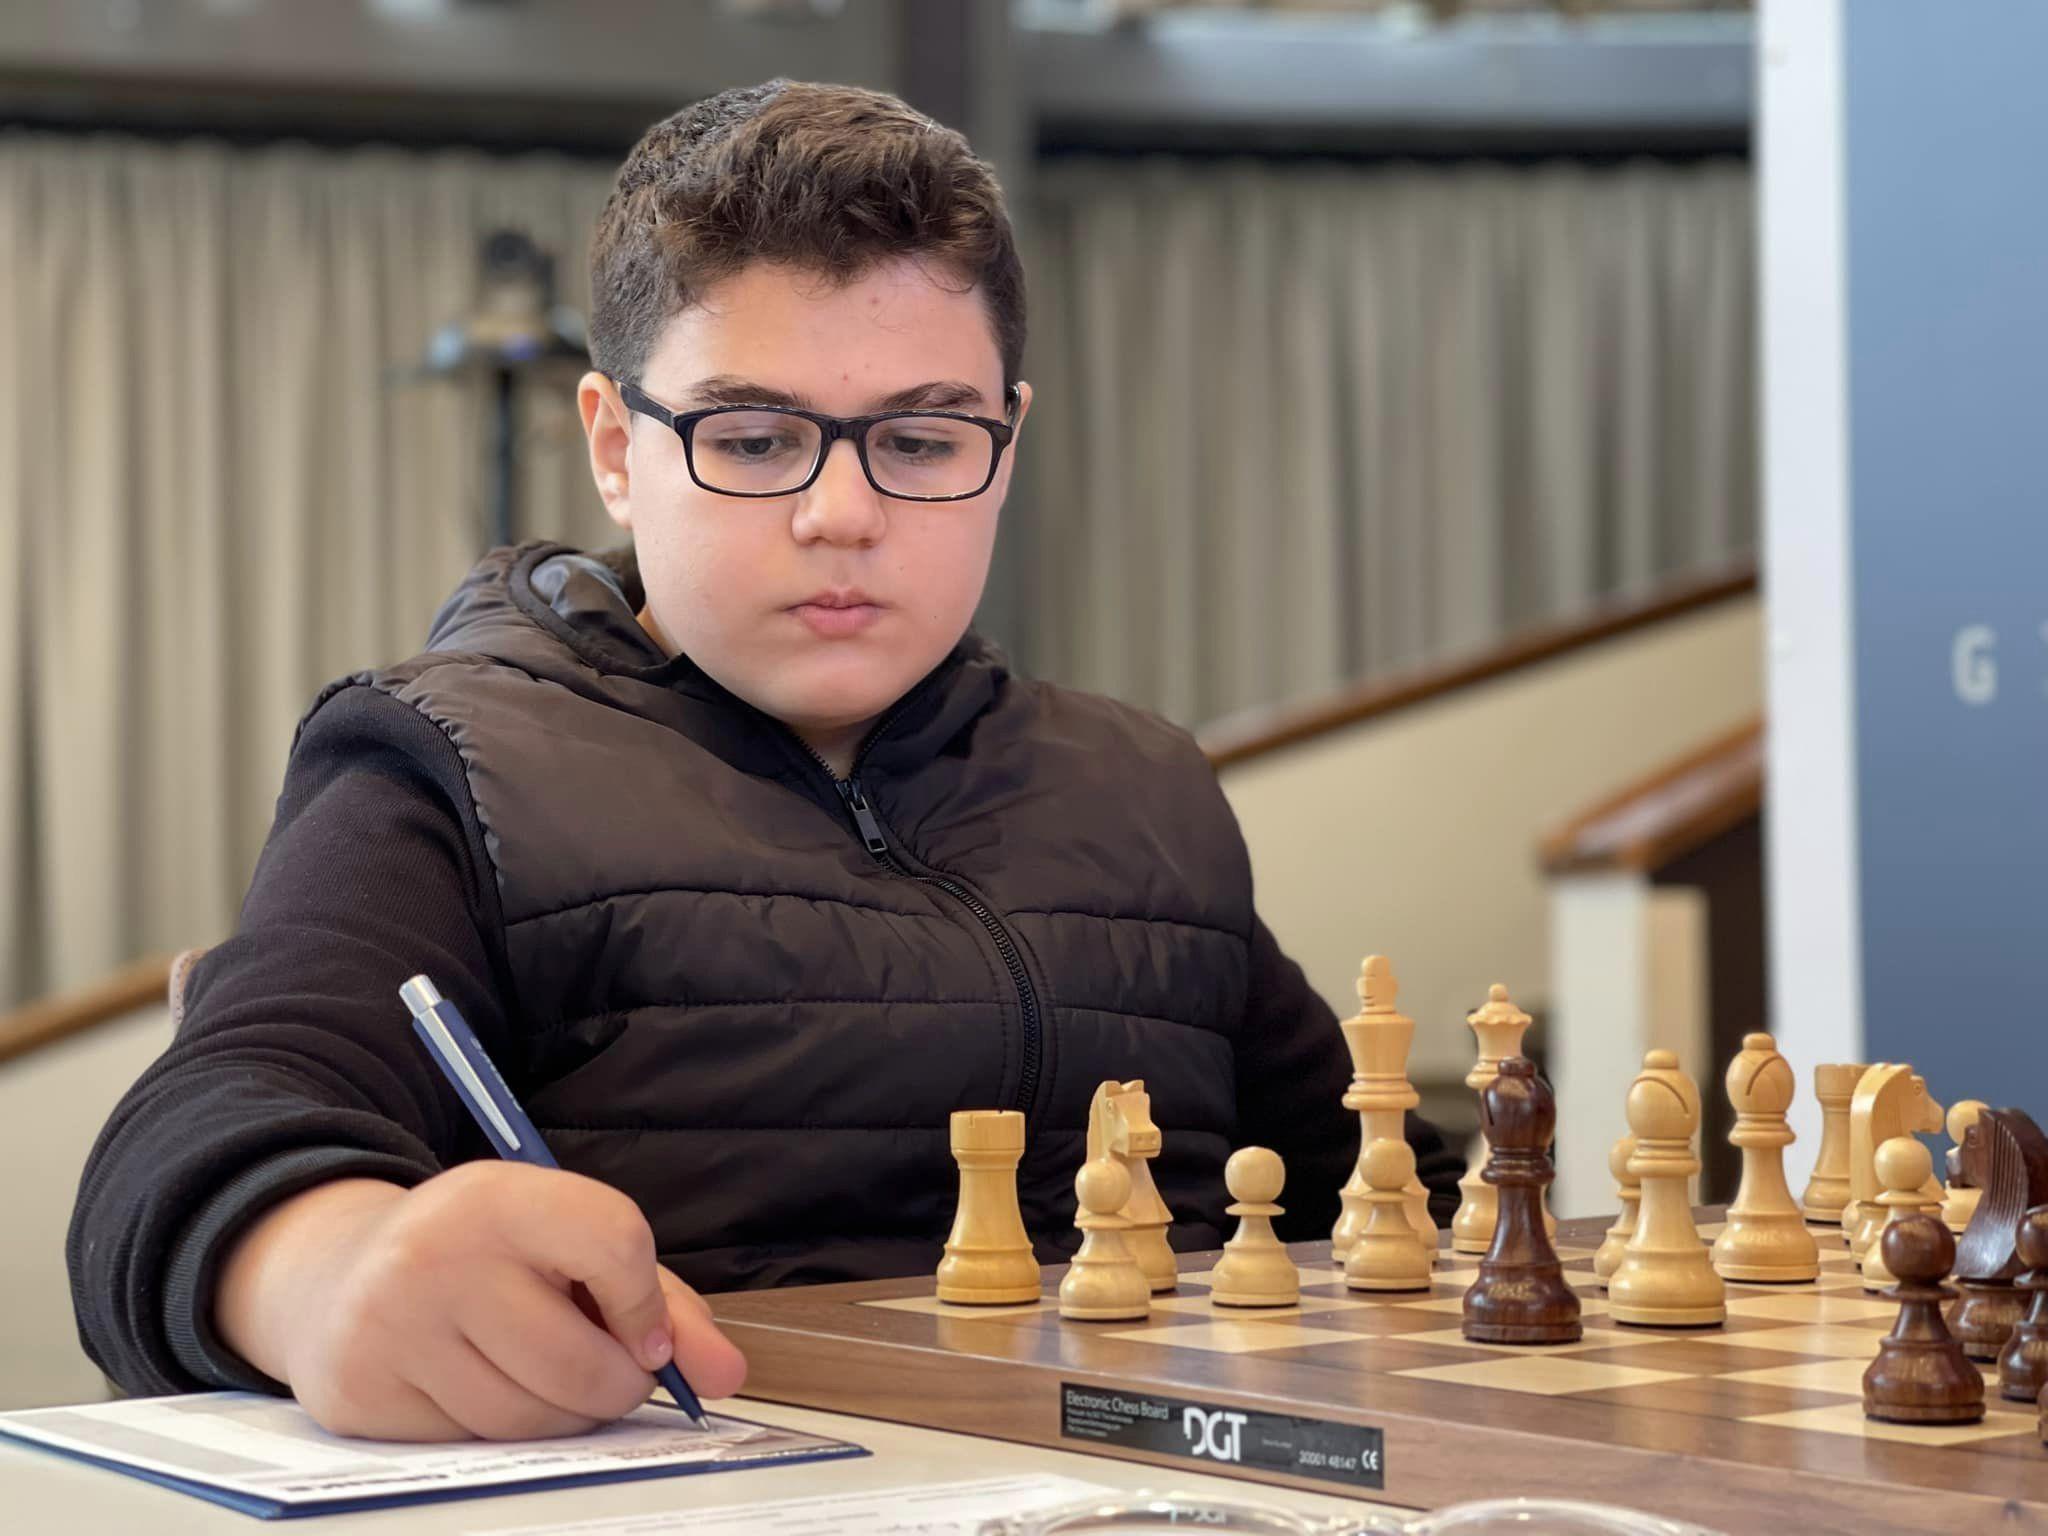 埃尔多格穆斯 12 岁成为世界上最年轻的国际象棋特级大师